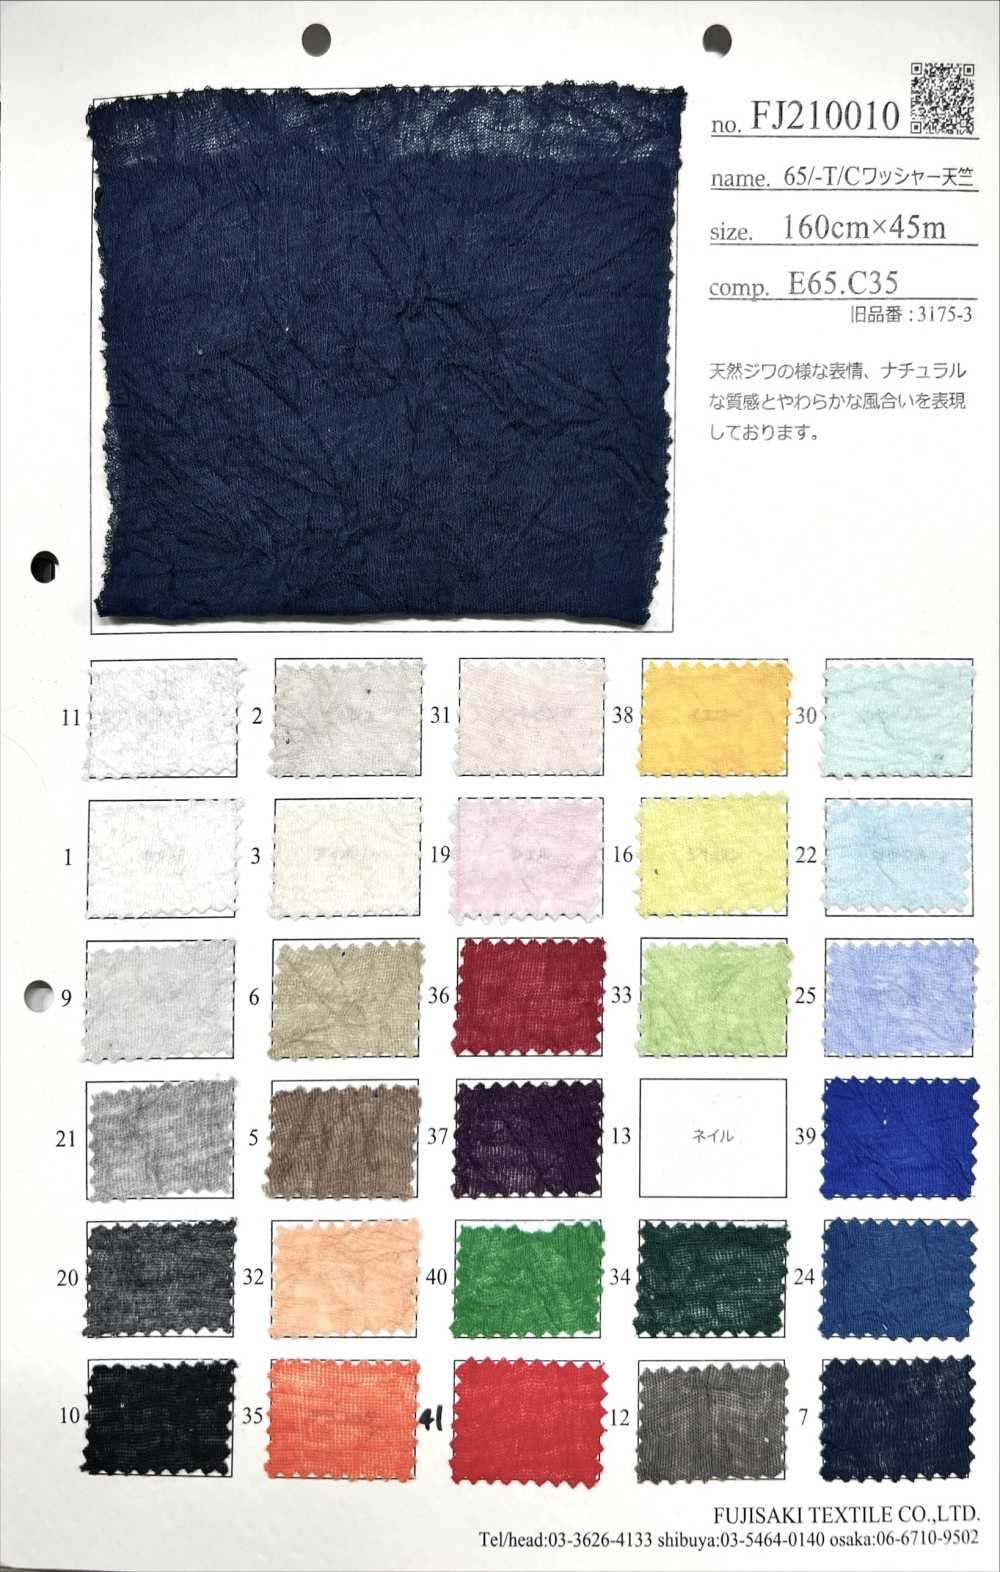 FJ210010 65/-T/C水洗加工天竺平针织物[面料] Fujisaki Textile